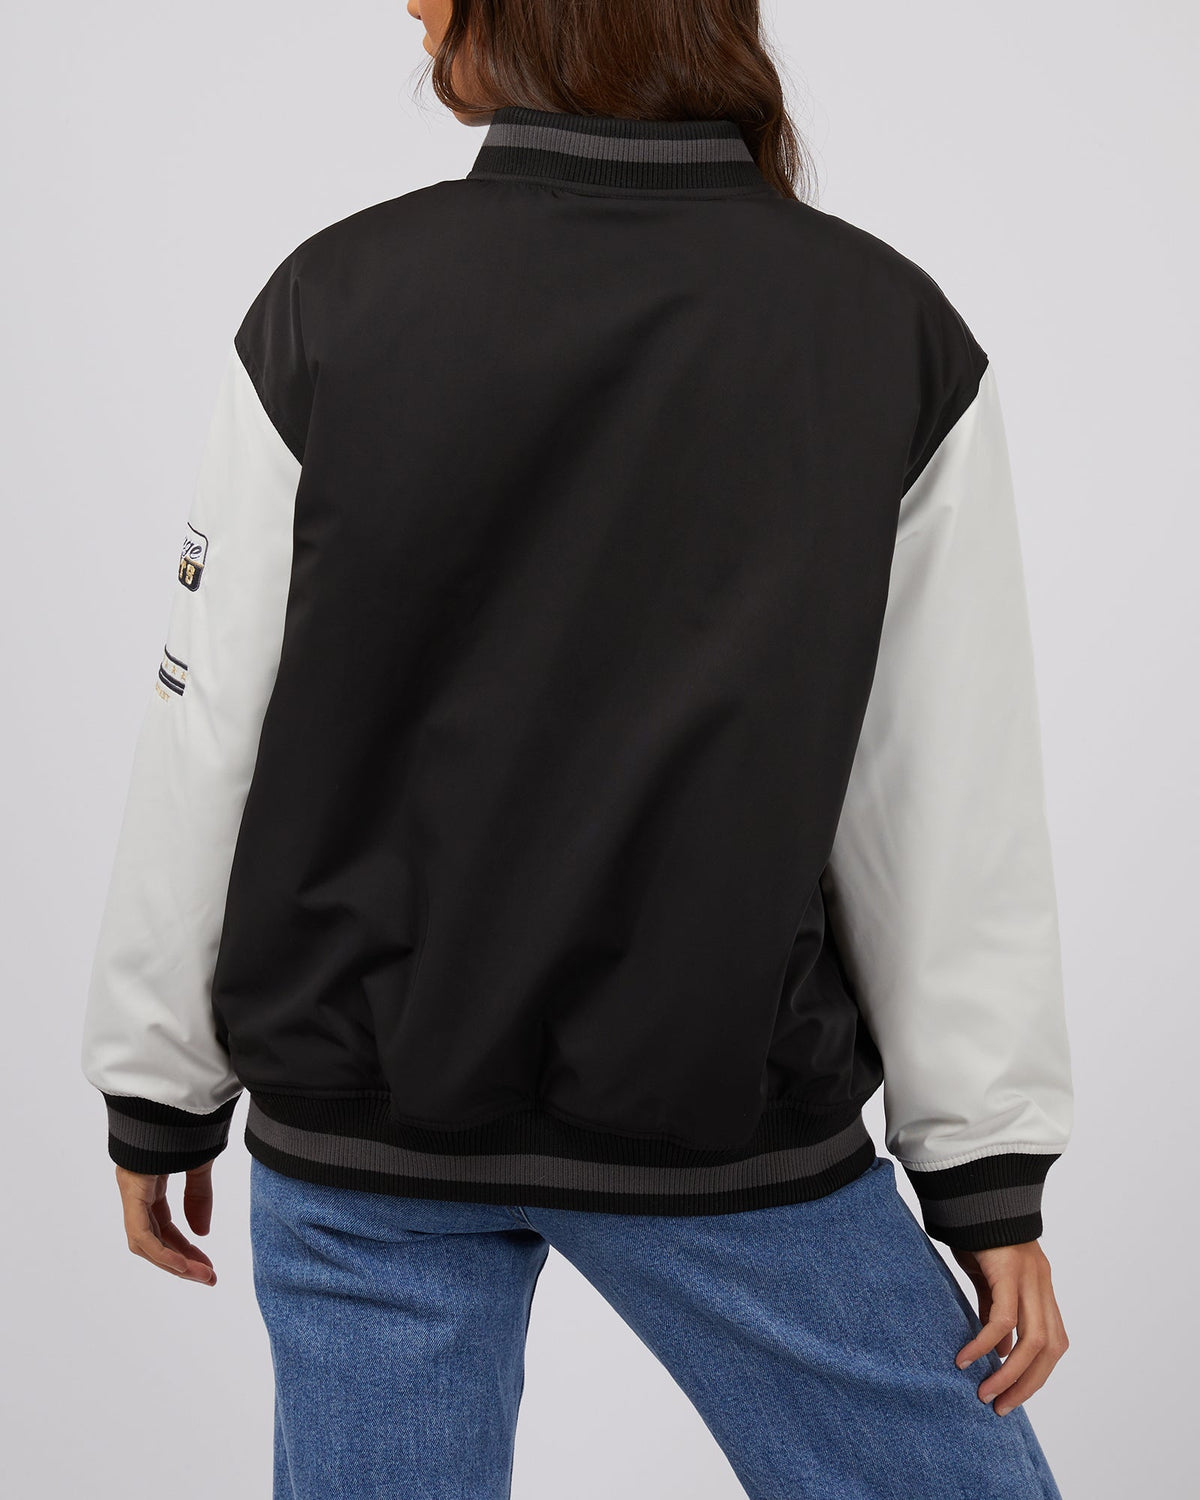 Silent Theory Ladies-Varsity Jacket Black-Edge Clothing